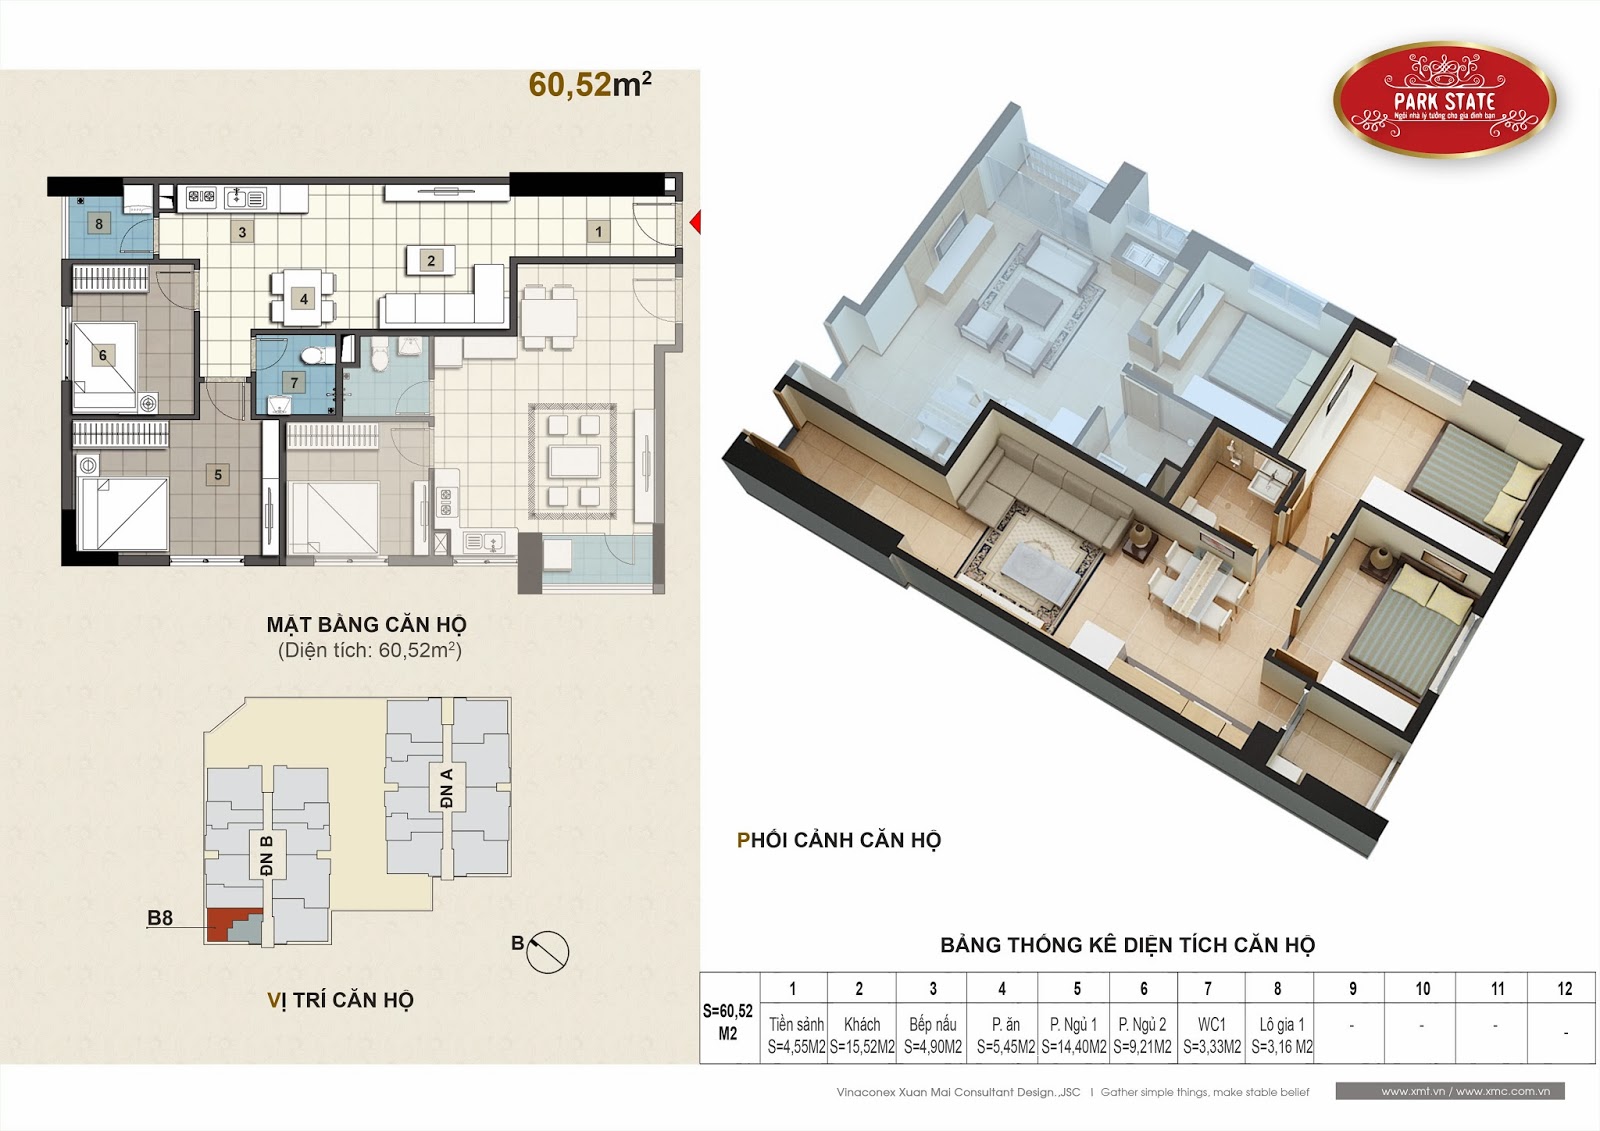 Sở hữu căn hộ chung cư cao cấp tại trung tâm quận Hà Đông chỉ với 900 triệu 010+Can+ho+60,52m2-V1